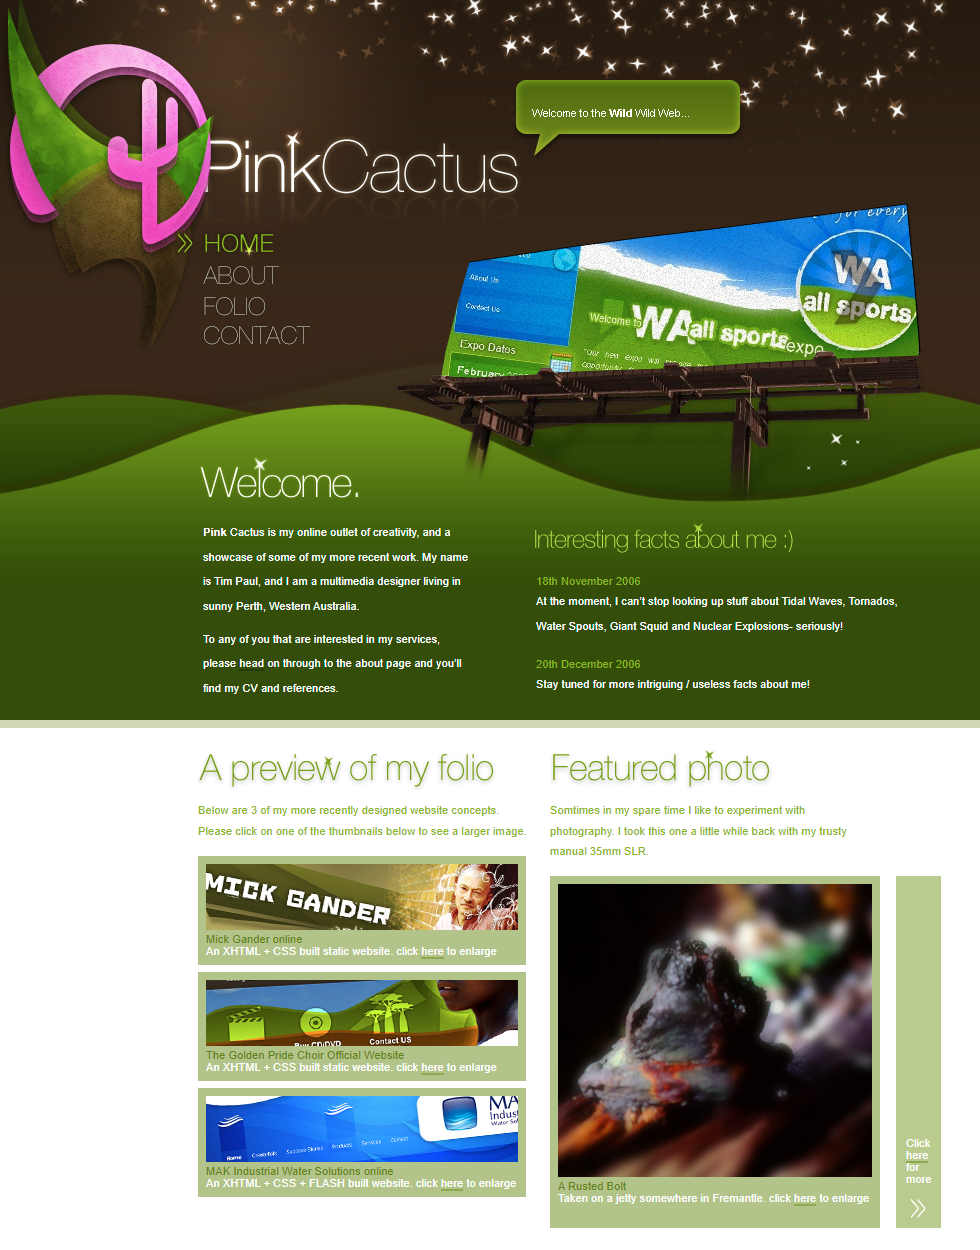 Pink Cactus website in 2007